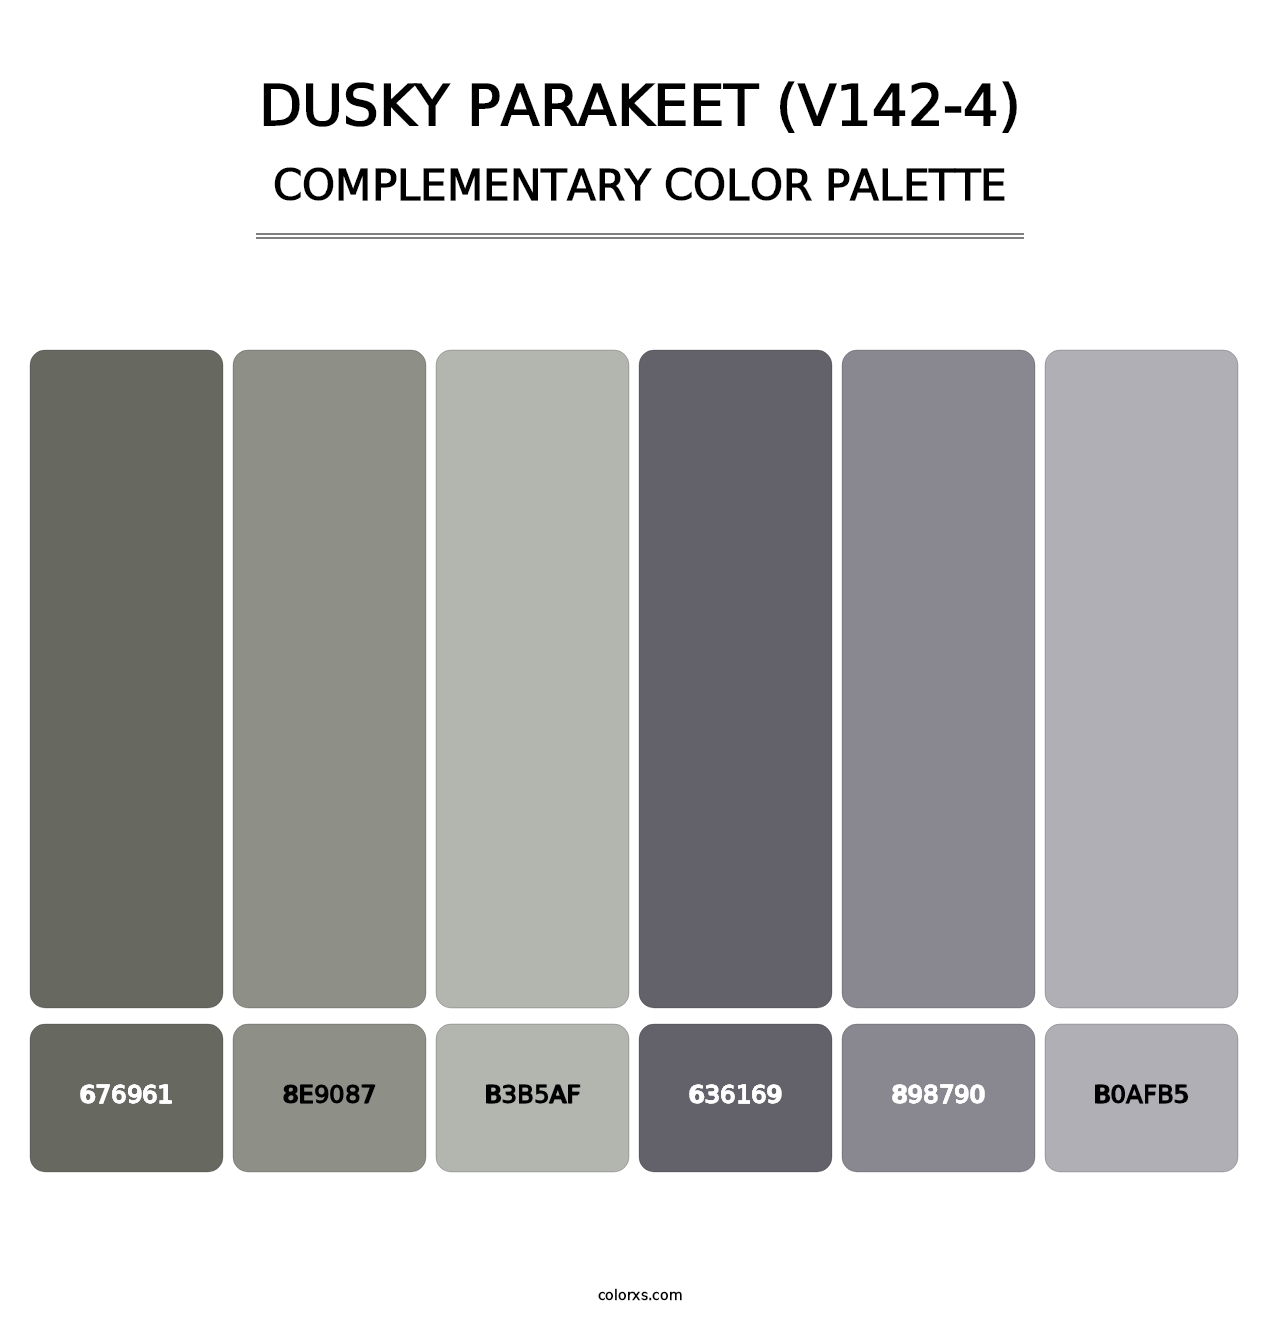 Dusky Parakeet (V142-4) - Complementary Color Palette